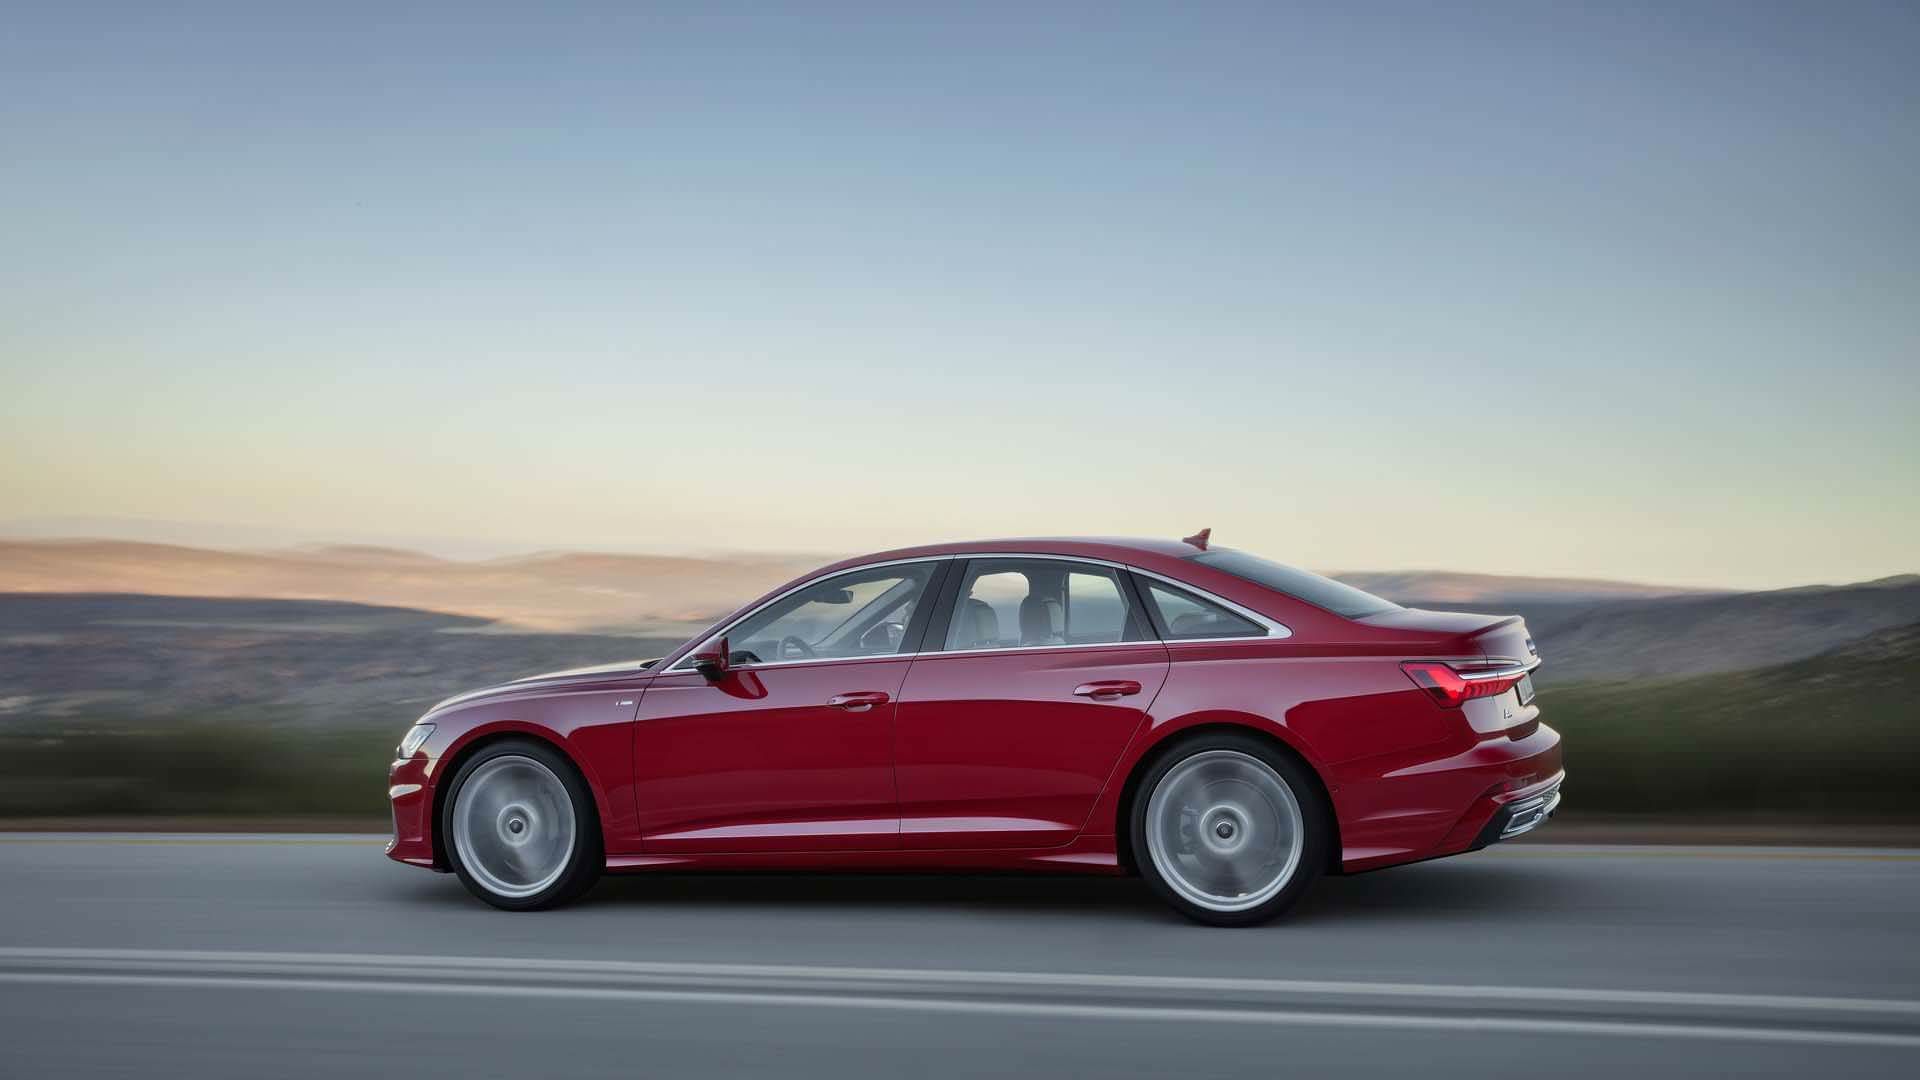 Audi A6 2019 / آئودی A6